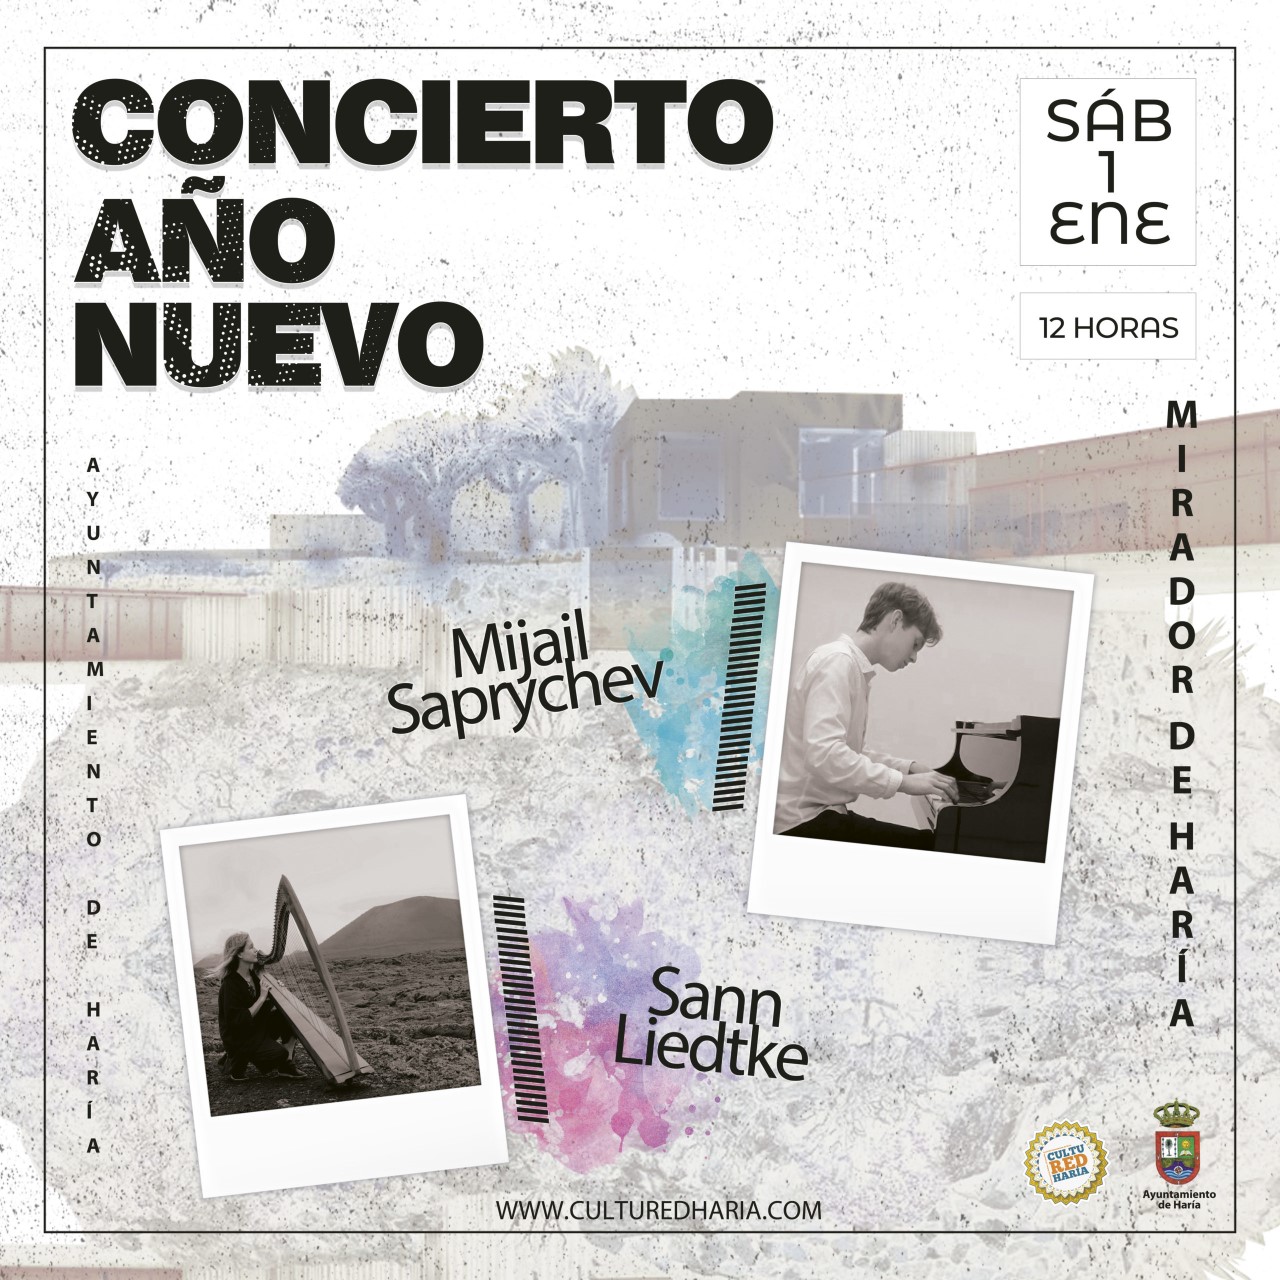 Concierto-Ano-Nuevo-scaled